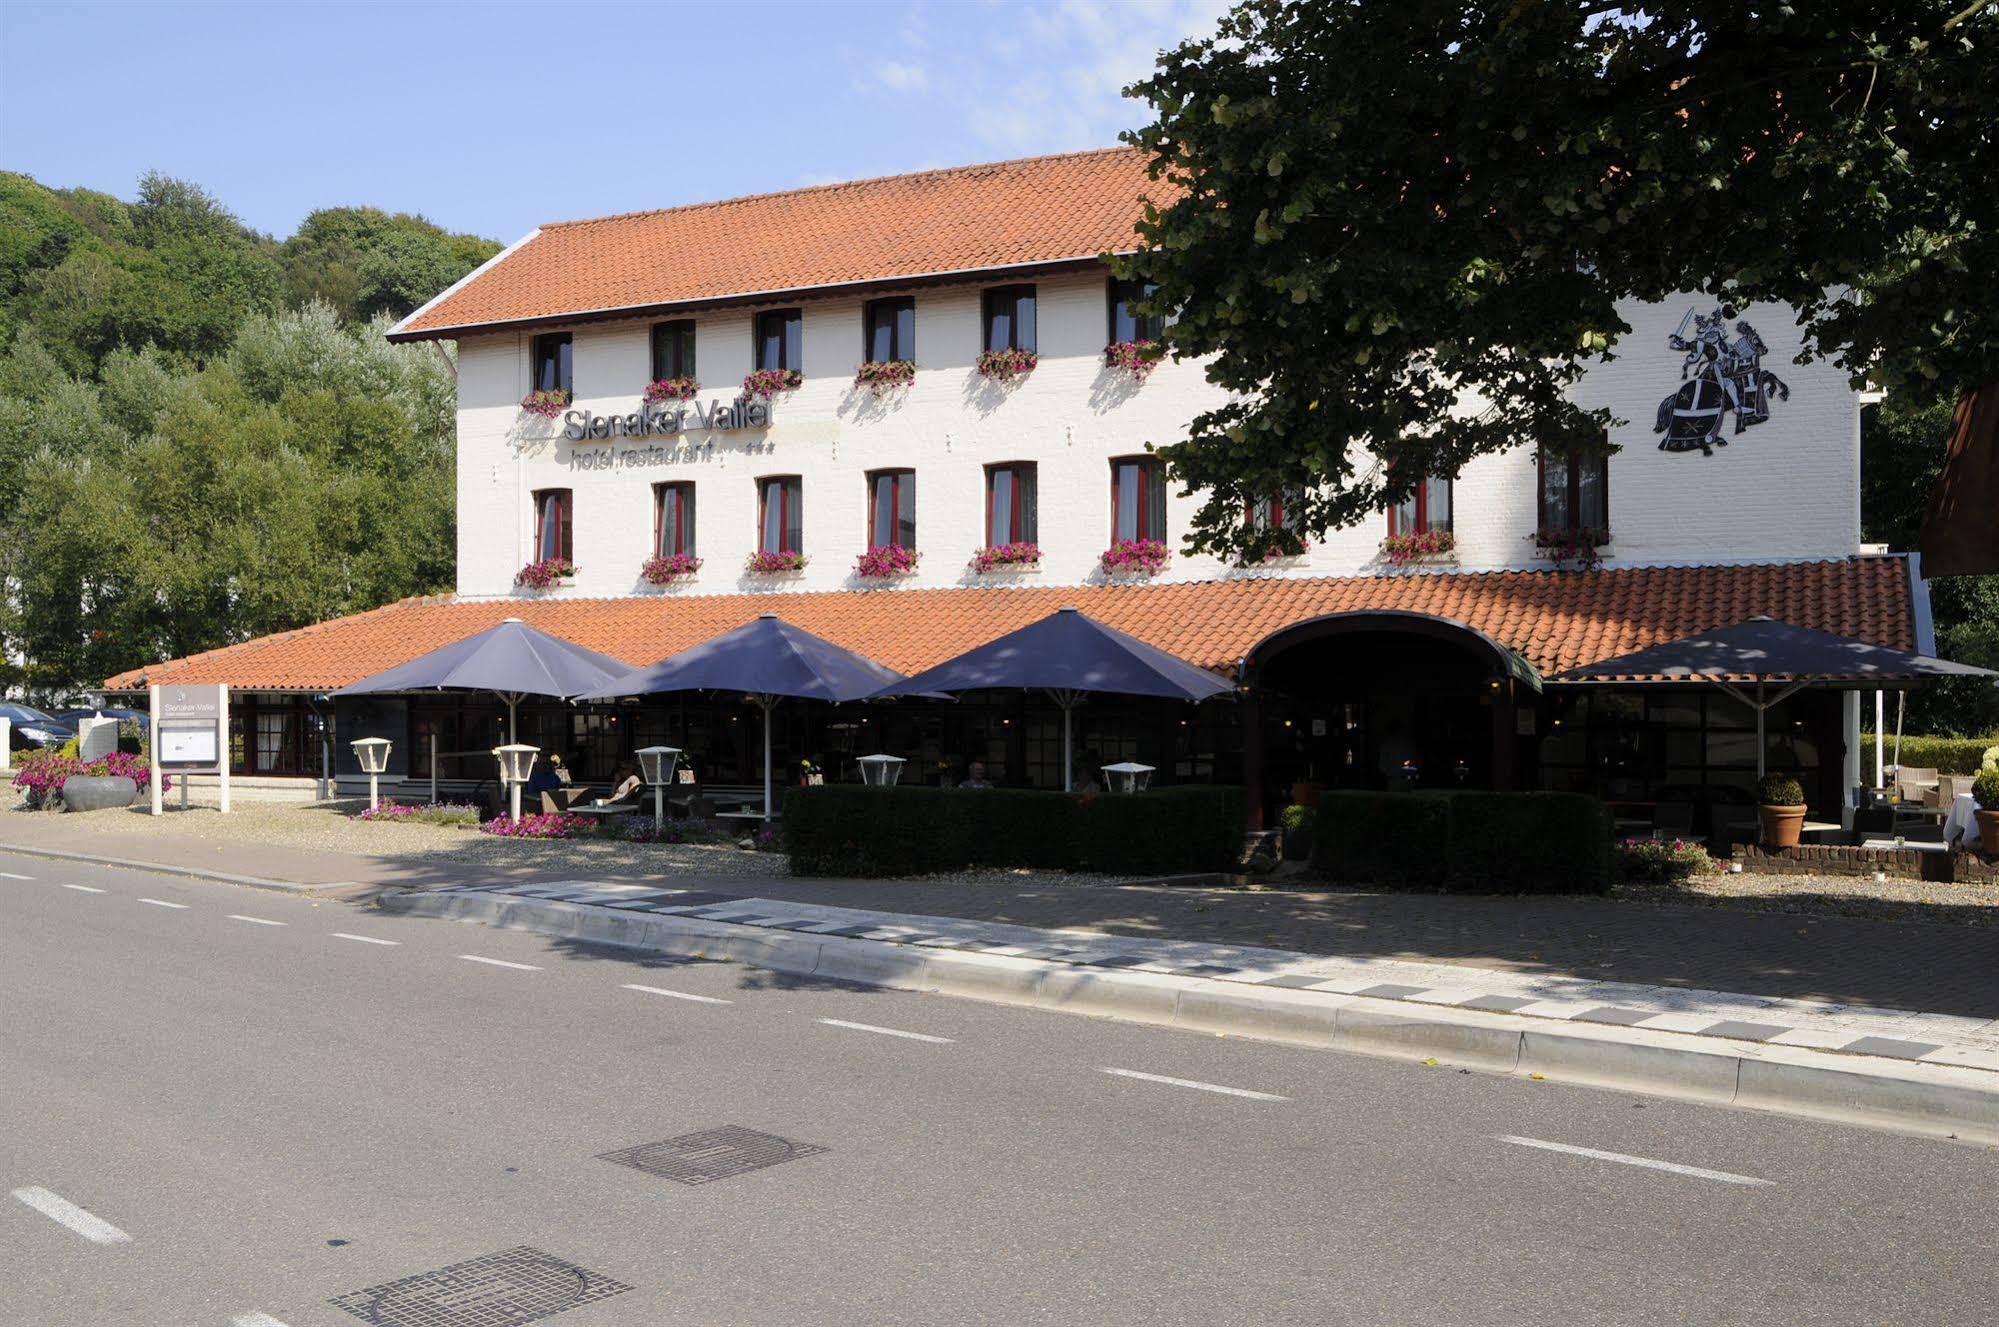 Slenaker Vallei Hotel Restaurant